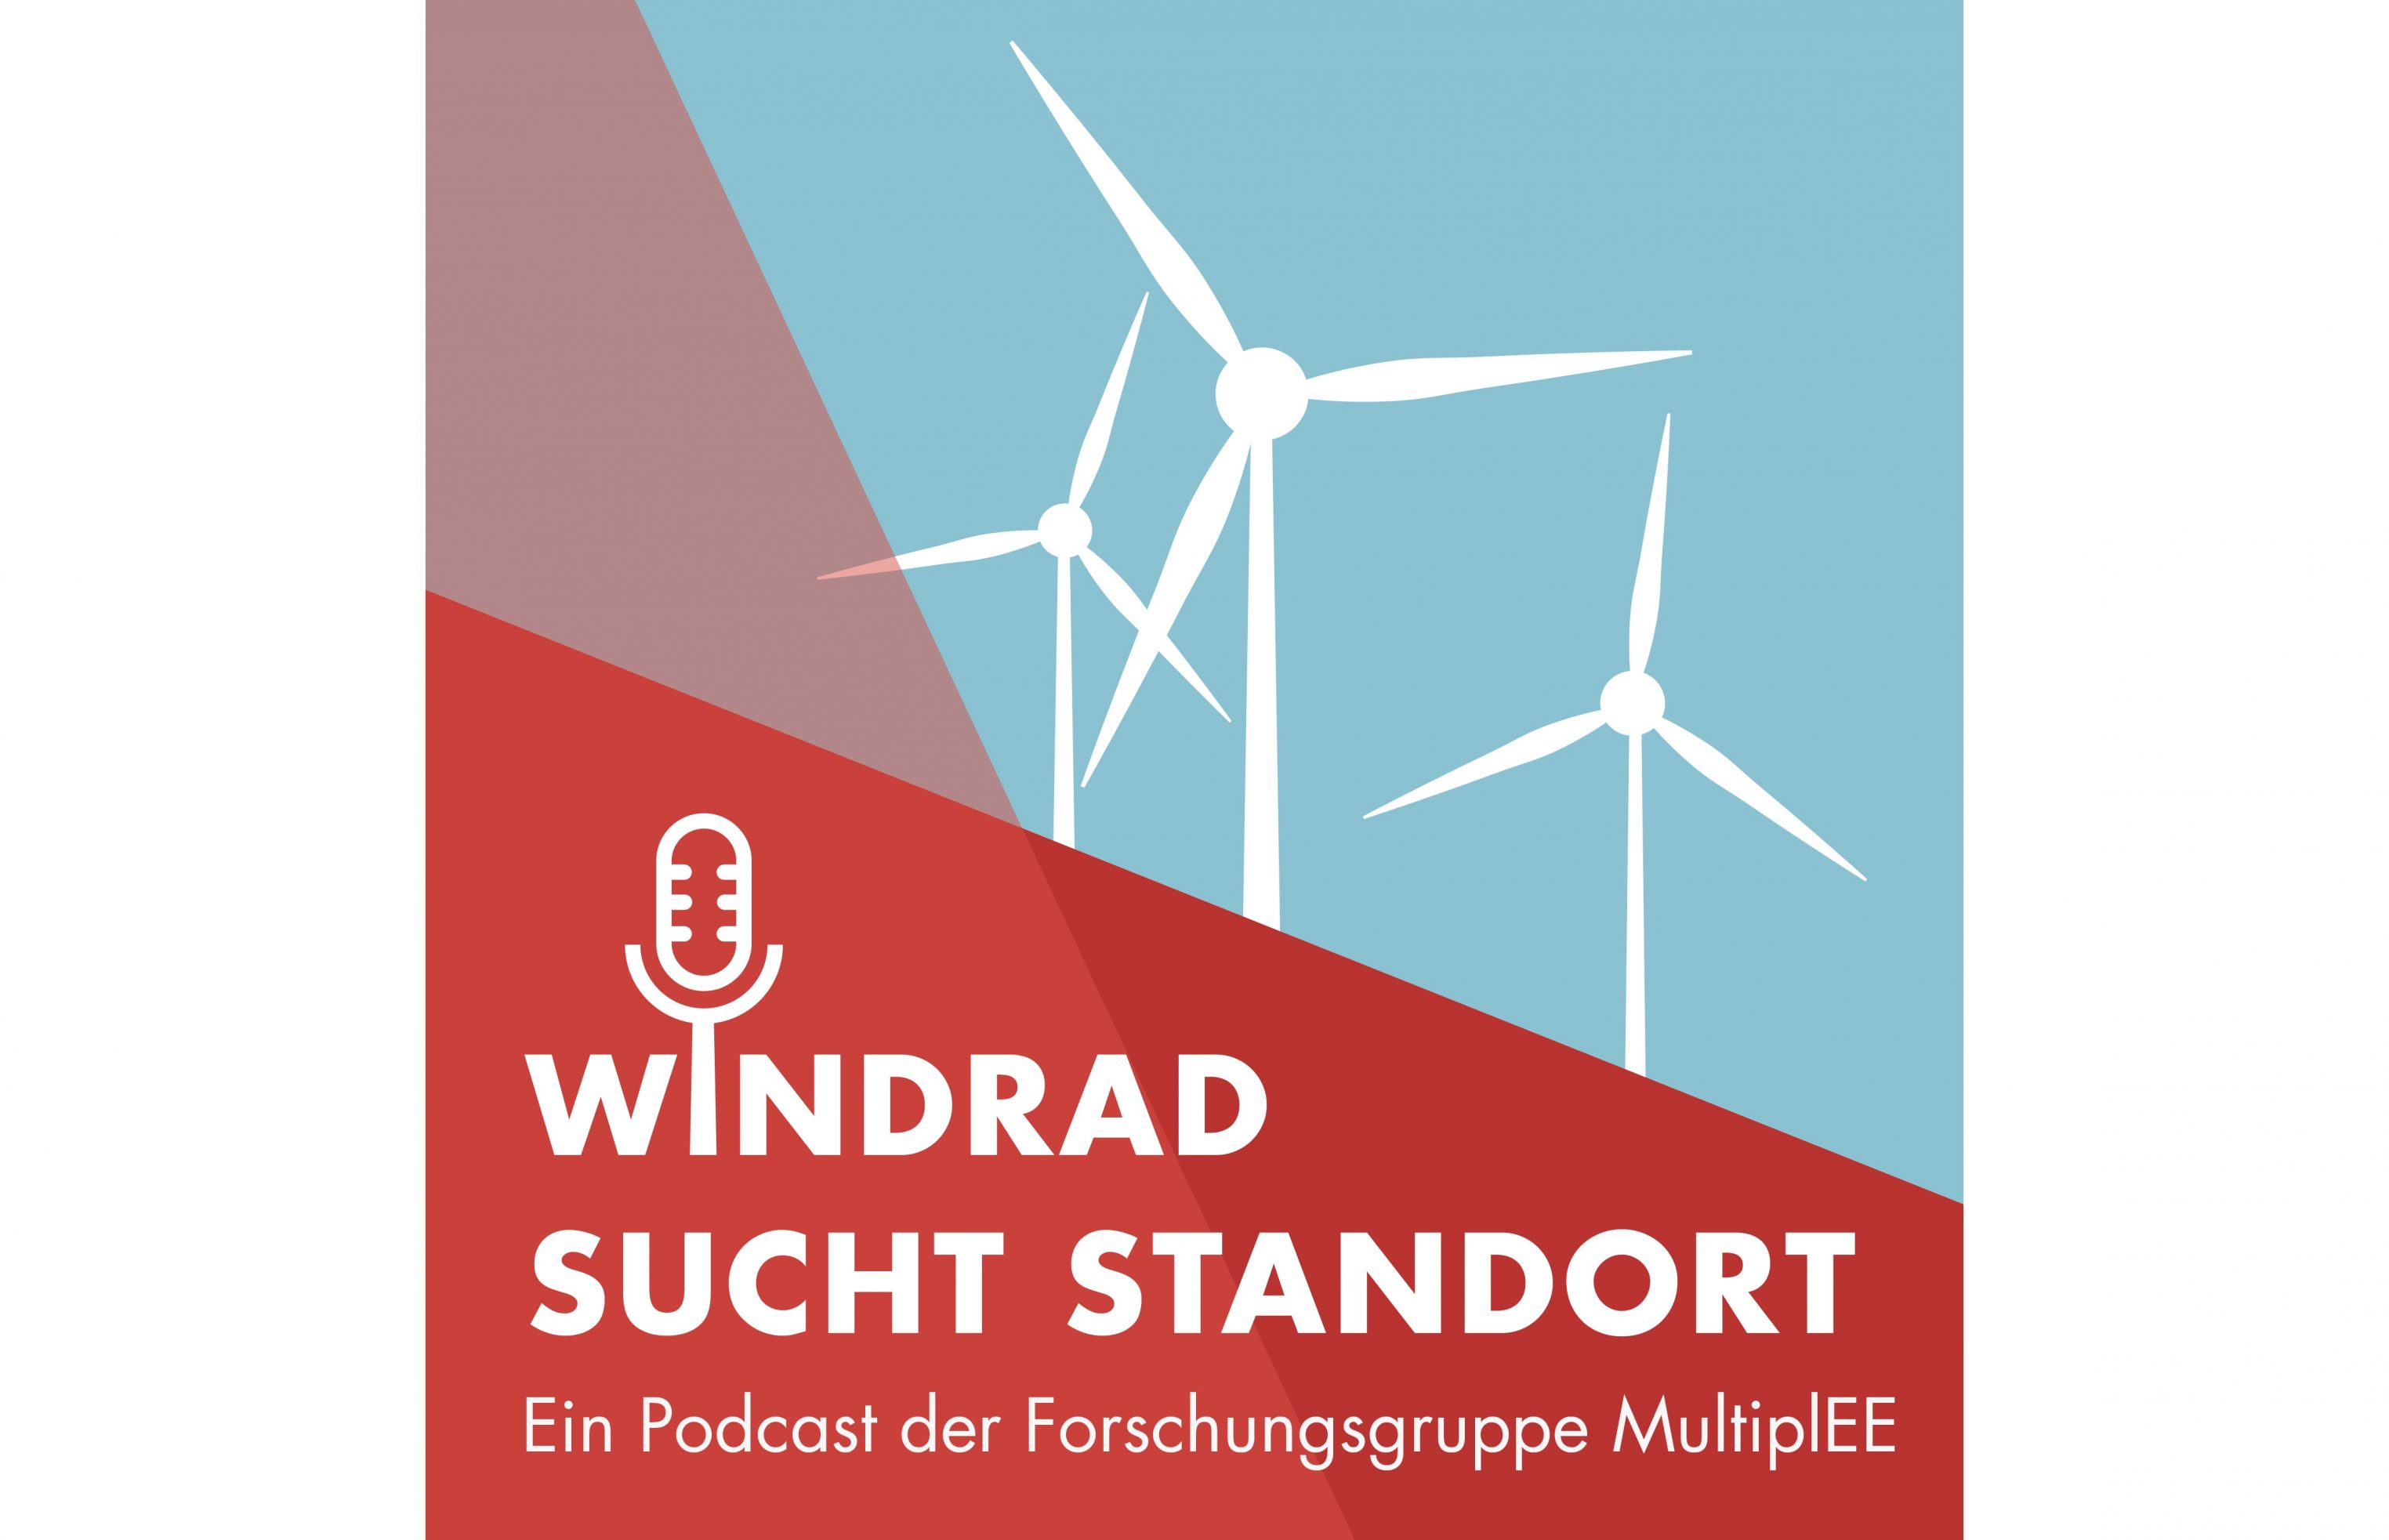 Podcast-Reihe „Windrad sucht Standort“ startet: Das MultiplEE-Team interviewt Expert:innen zum Thema Windenergie